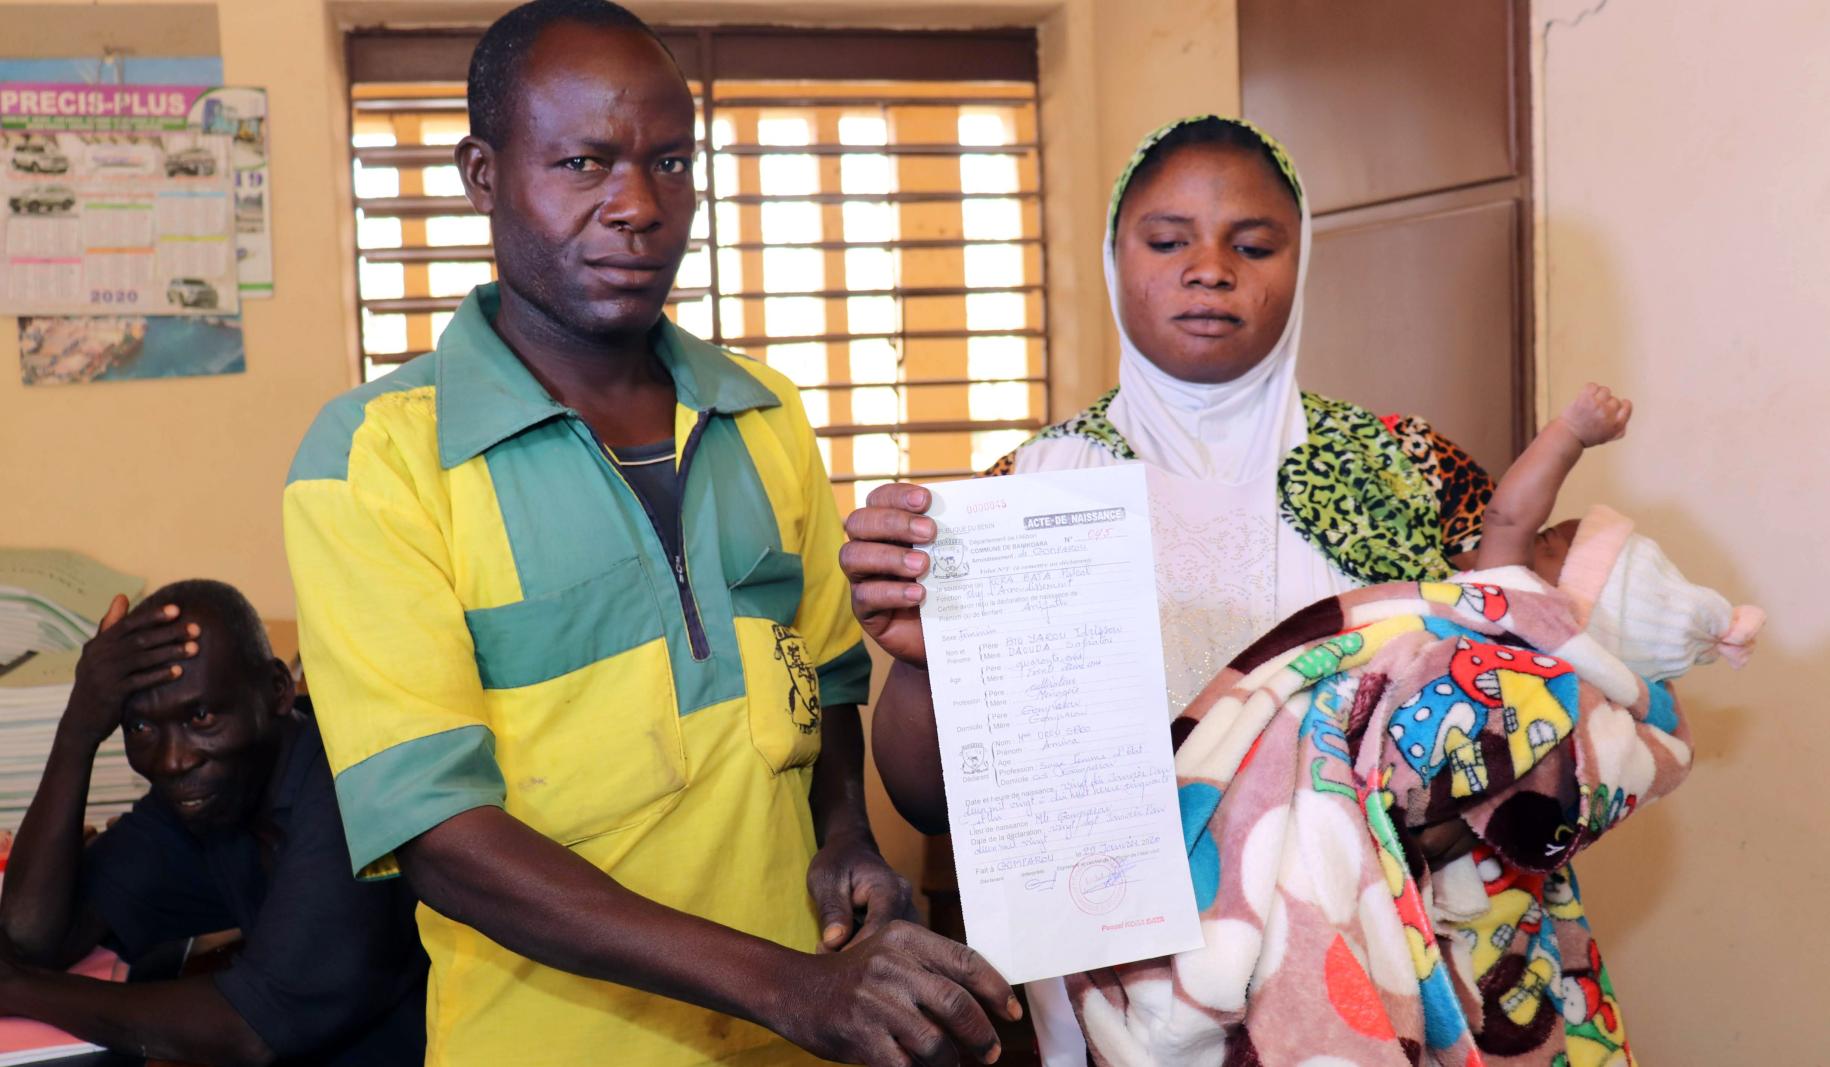 Tras un arduo proceso, Safiatou y su marido Idrissou reciben el certificado de nacimiento de su infante recién nacido.